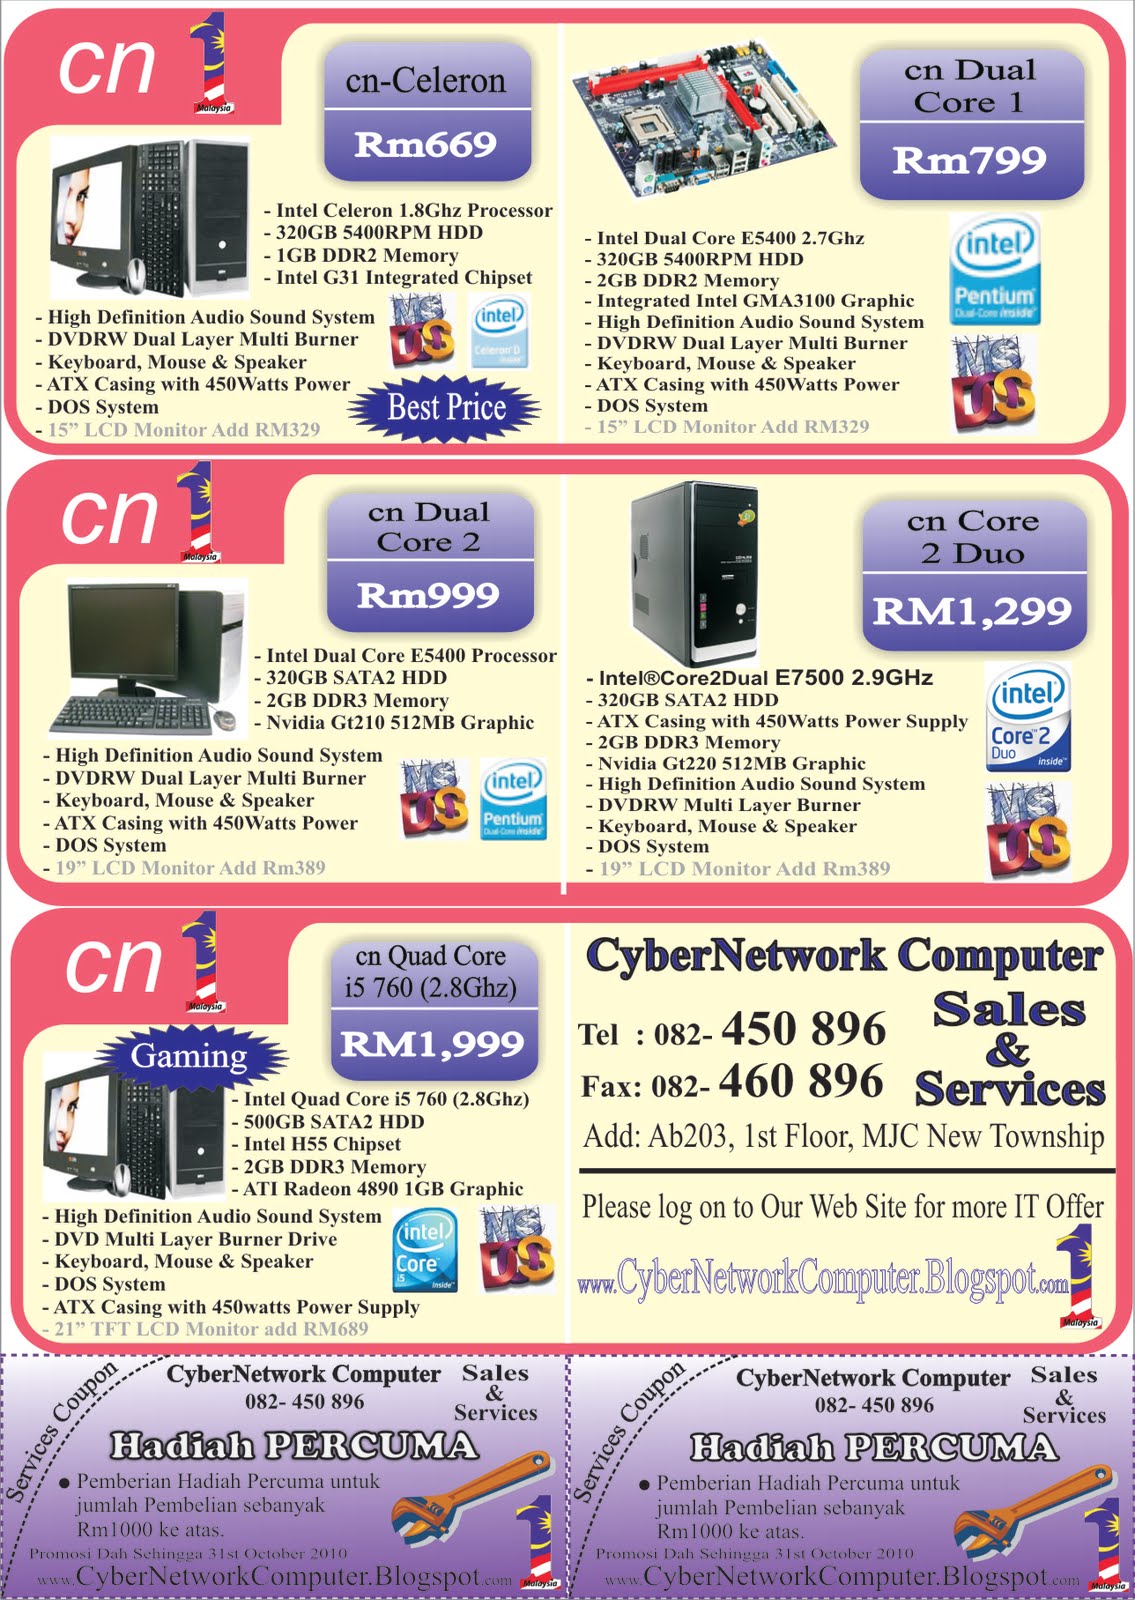 CyberNetwork Computer Sales & Services: Desktop PC Promotion!